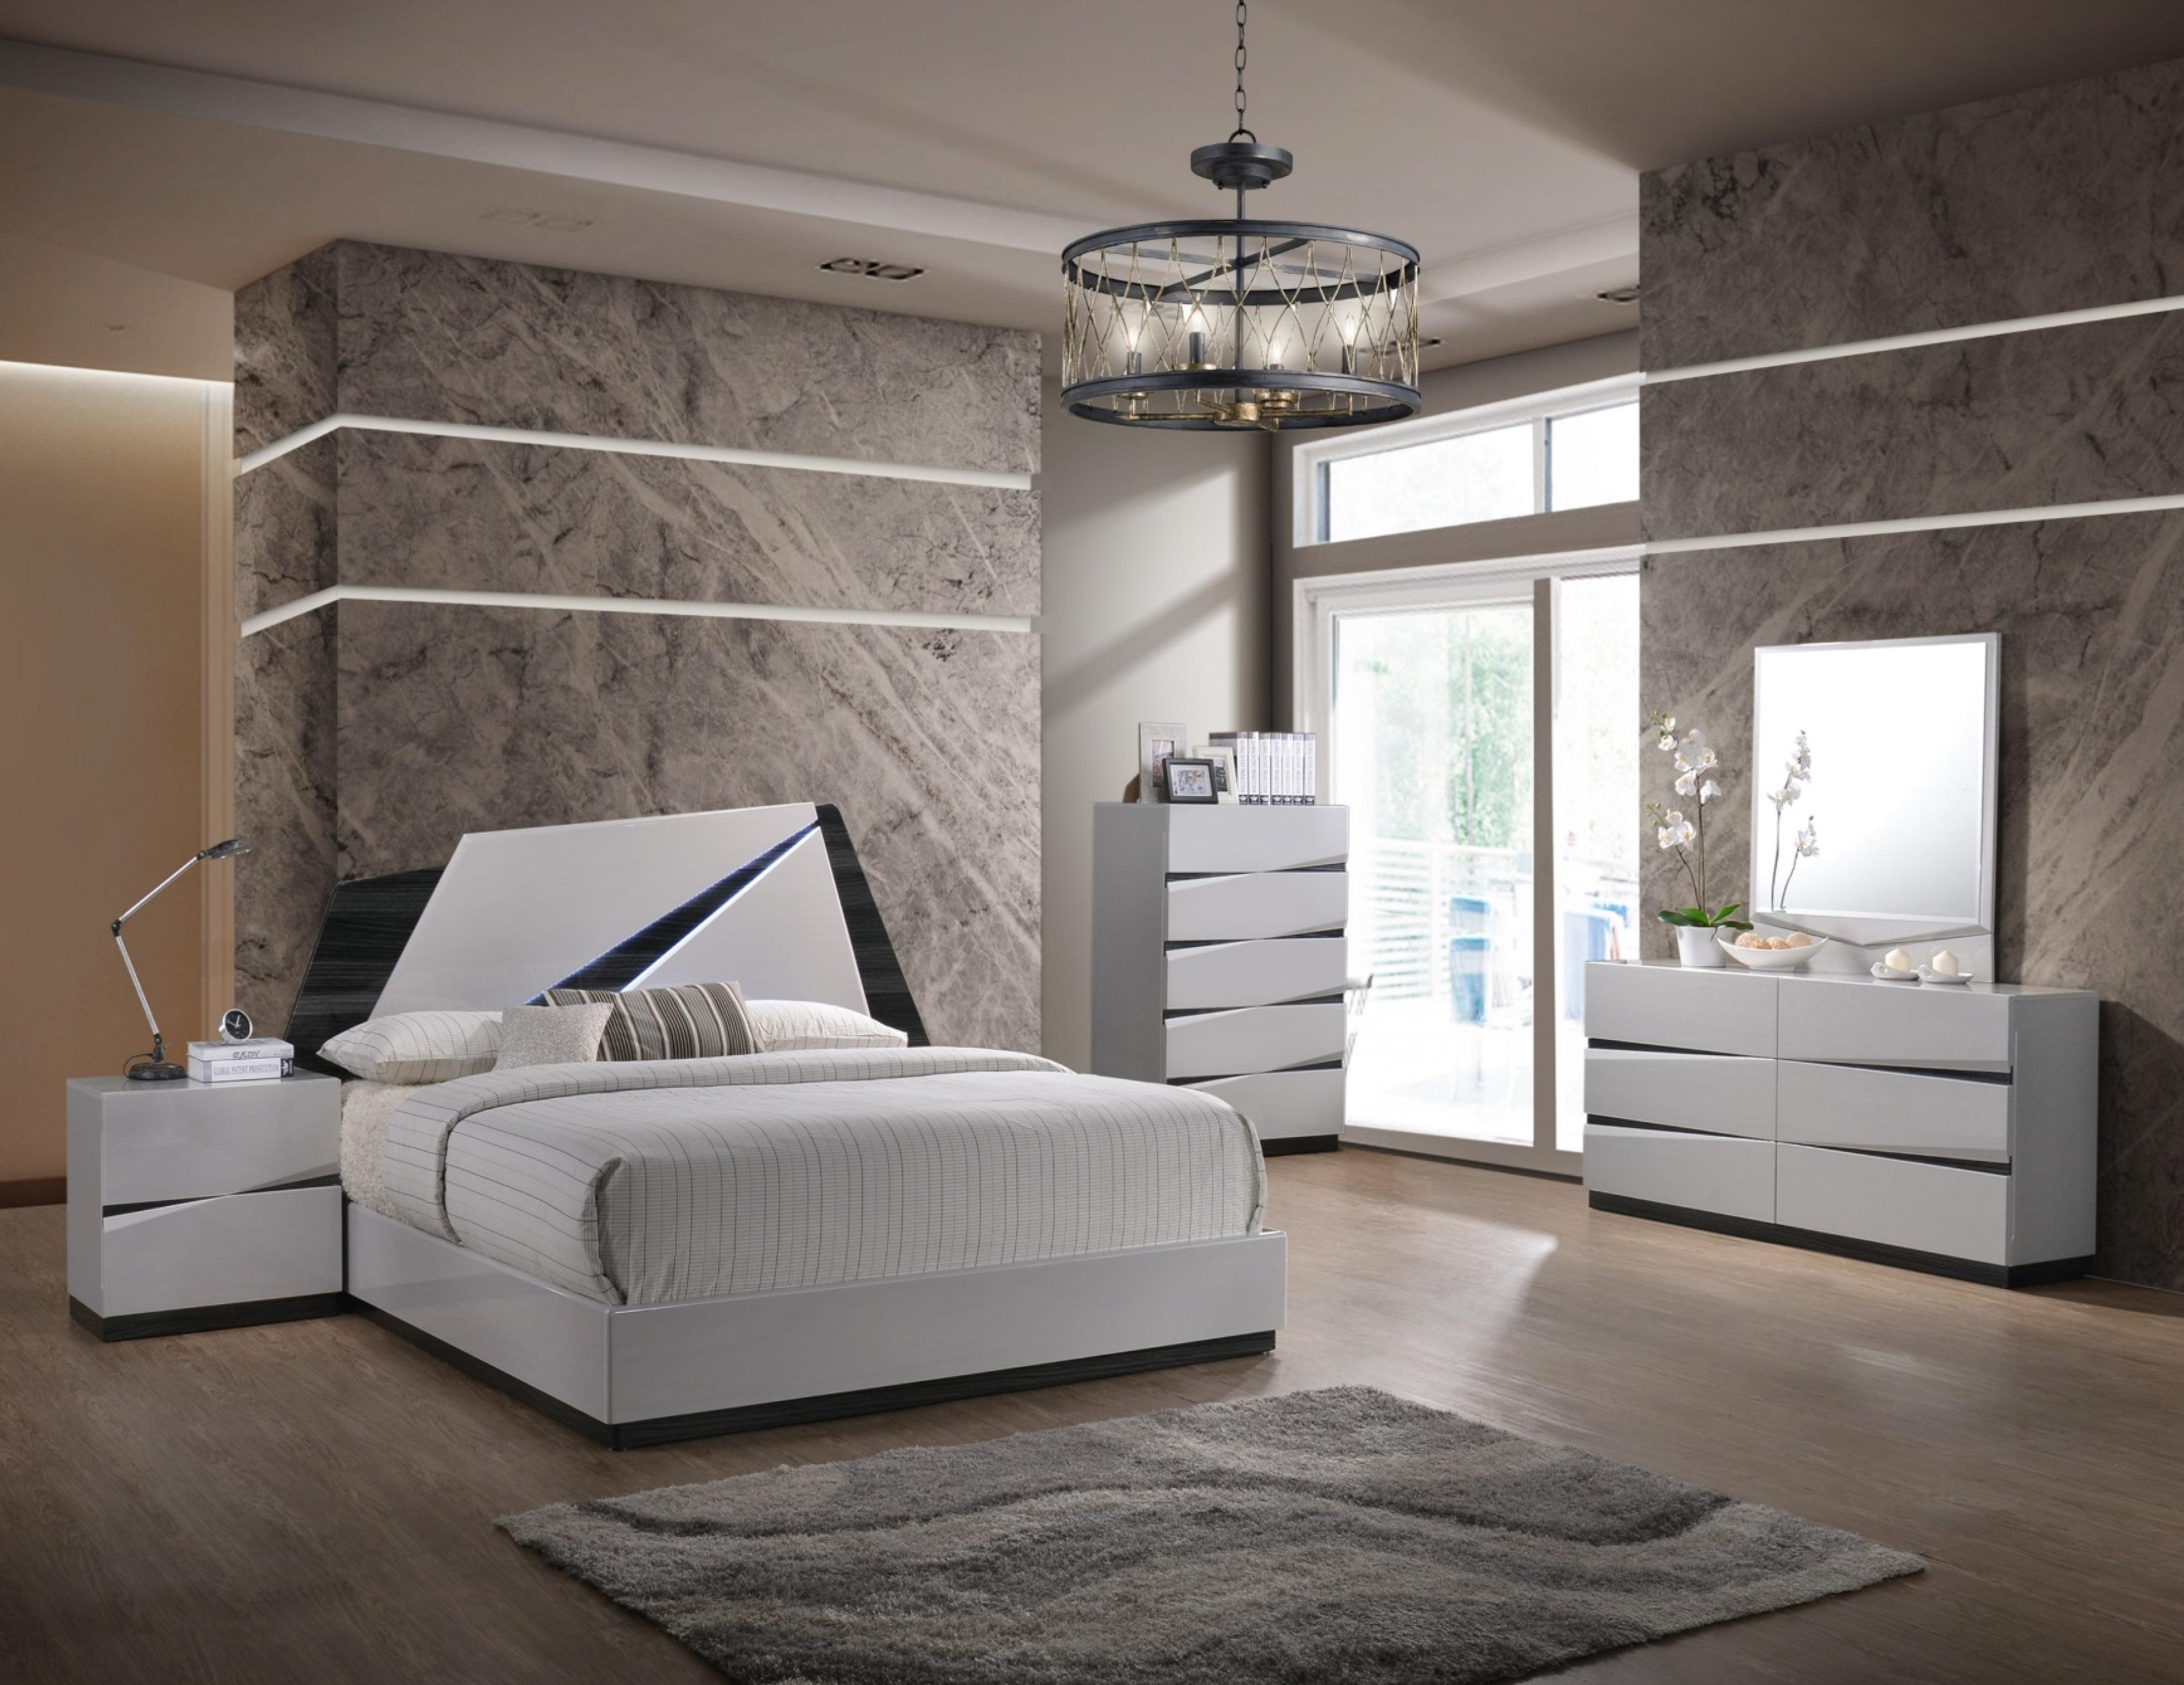 

    
Global Furniture Scarlett Modern White Gloss Finish Queen Bedroom Set 3 Pcs
